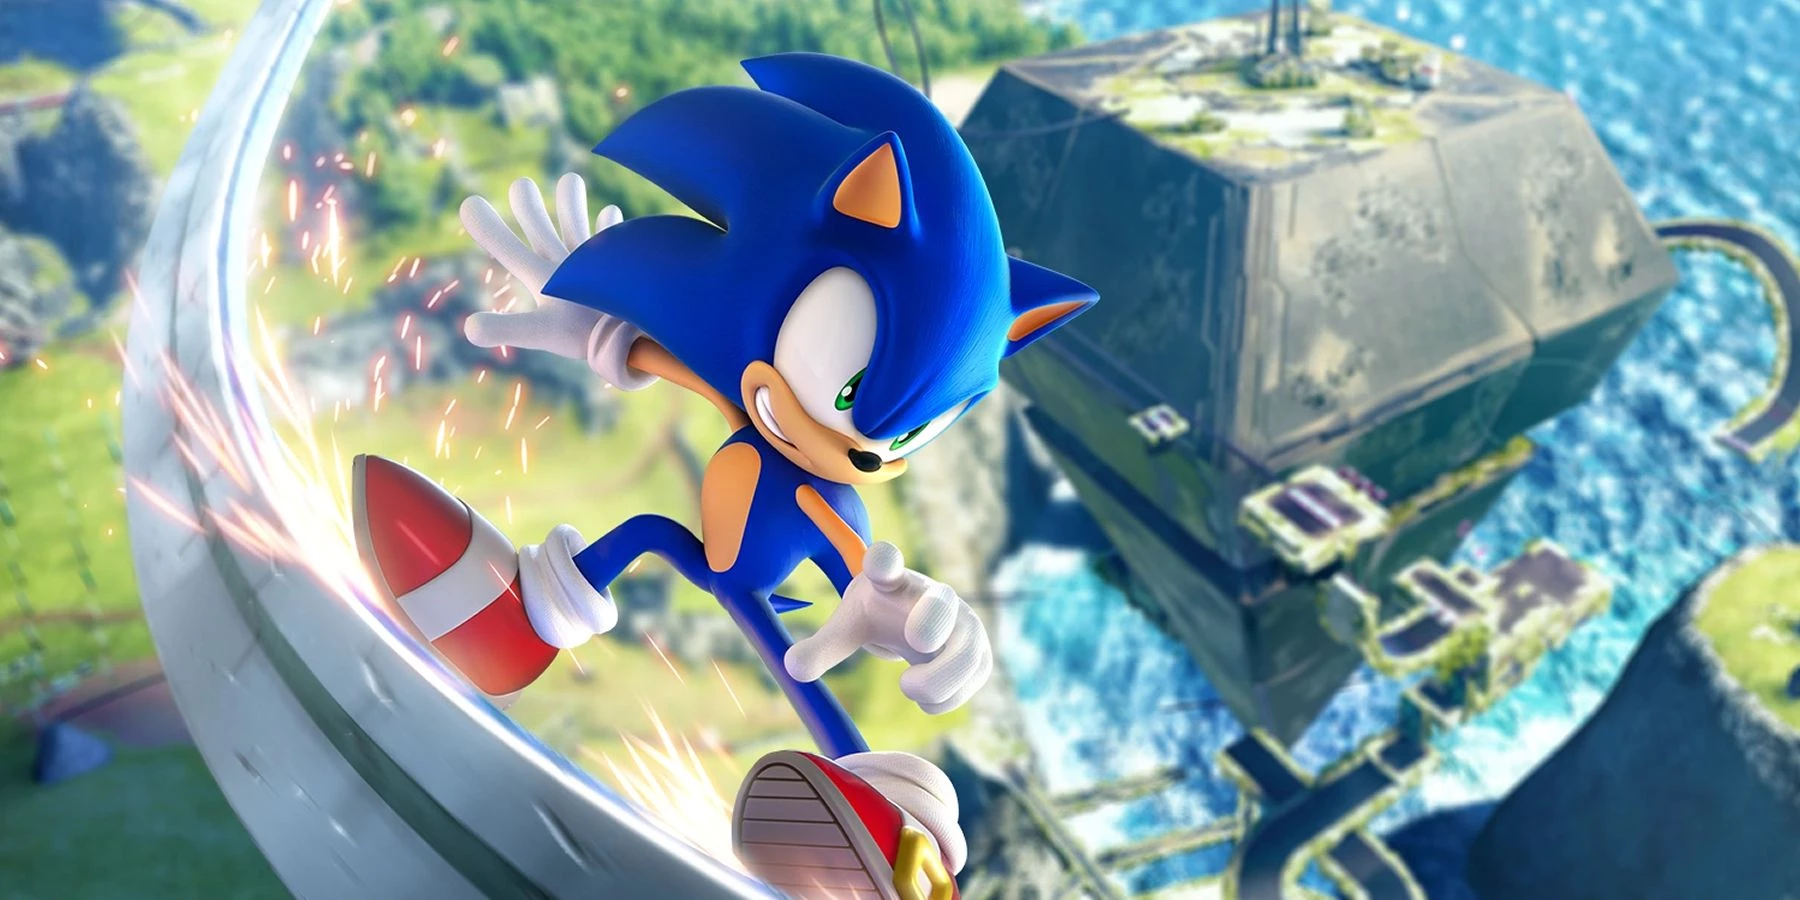 Sonic Frontiers Metacritic User Score Highest In The Series